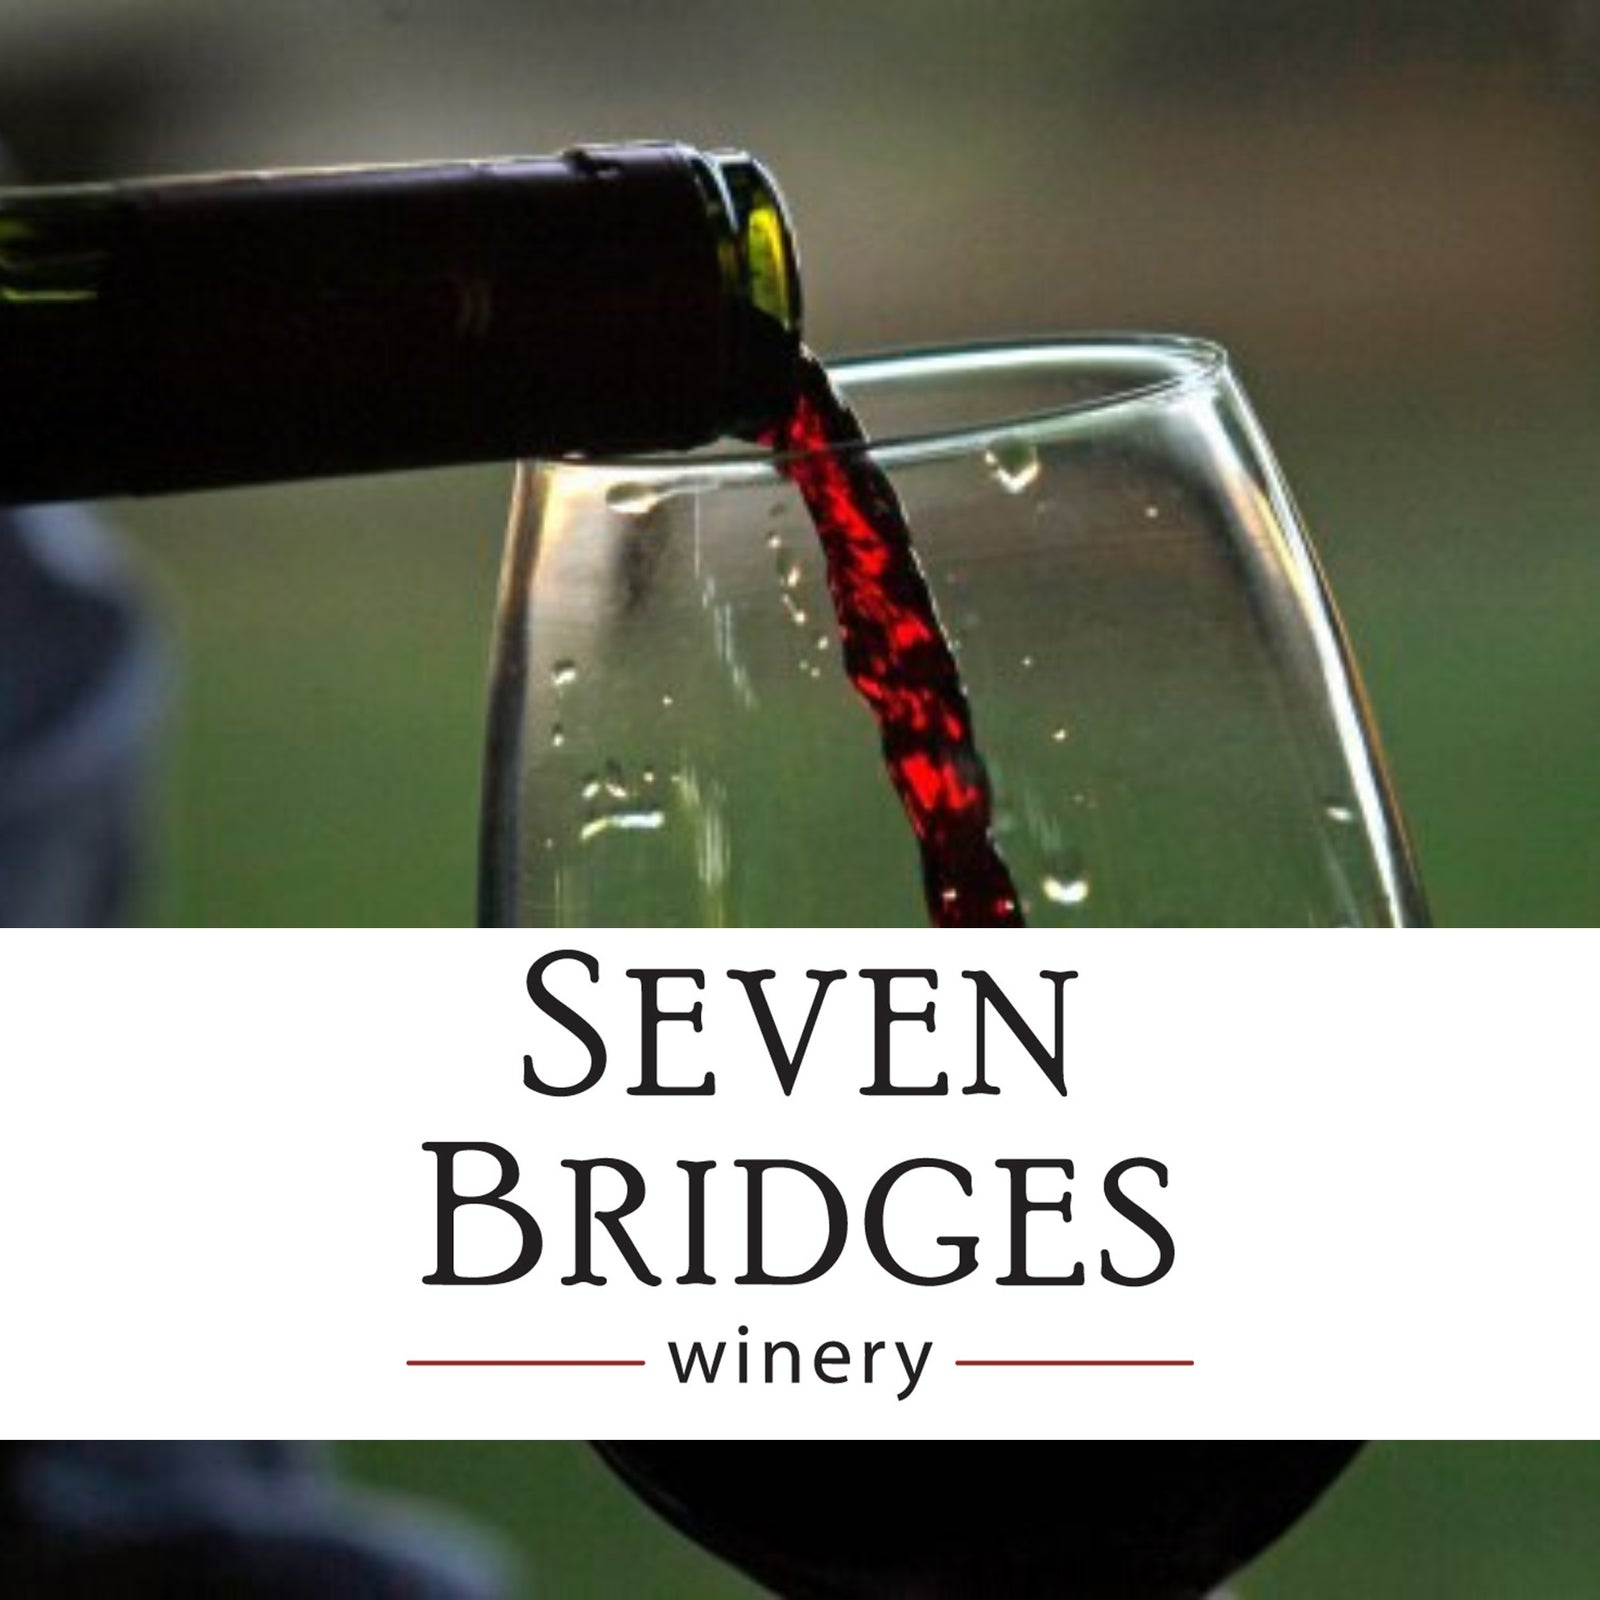 Sip at Al's Seven Bridges Winery